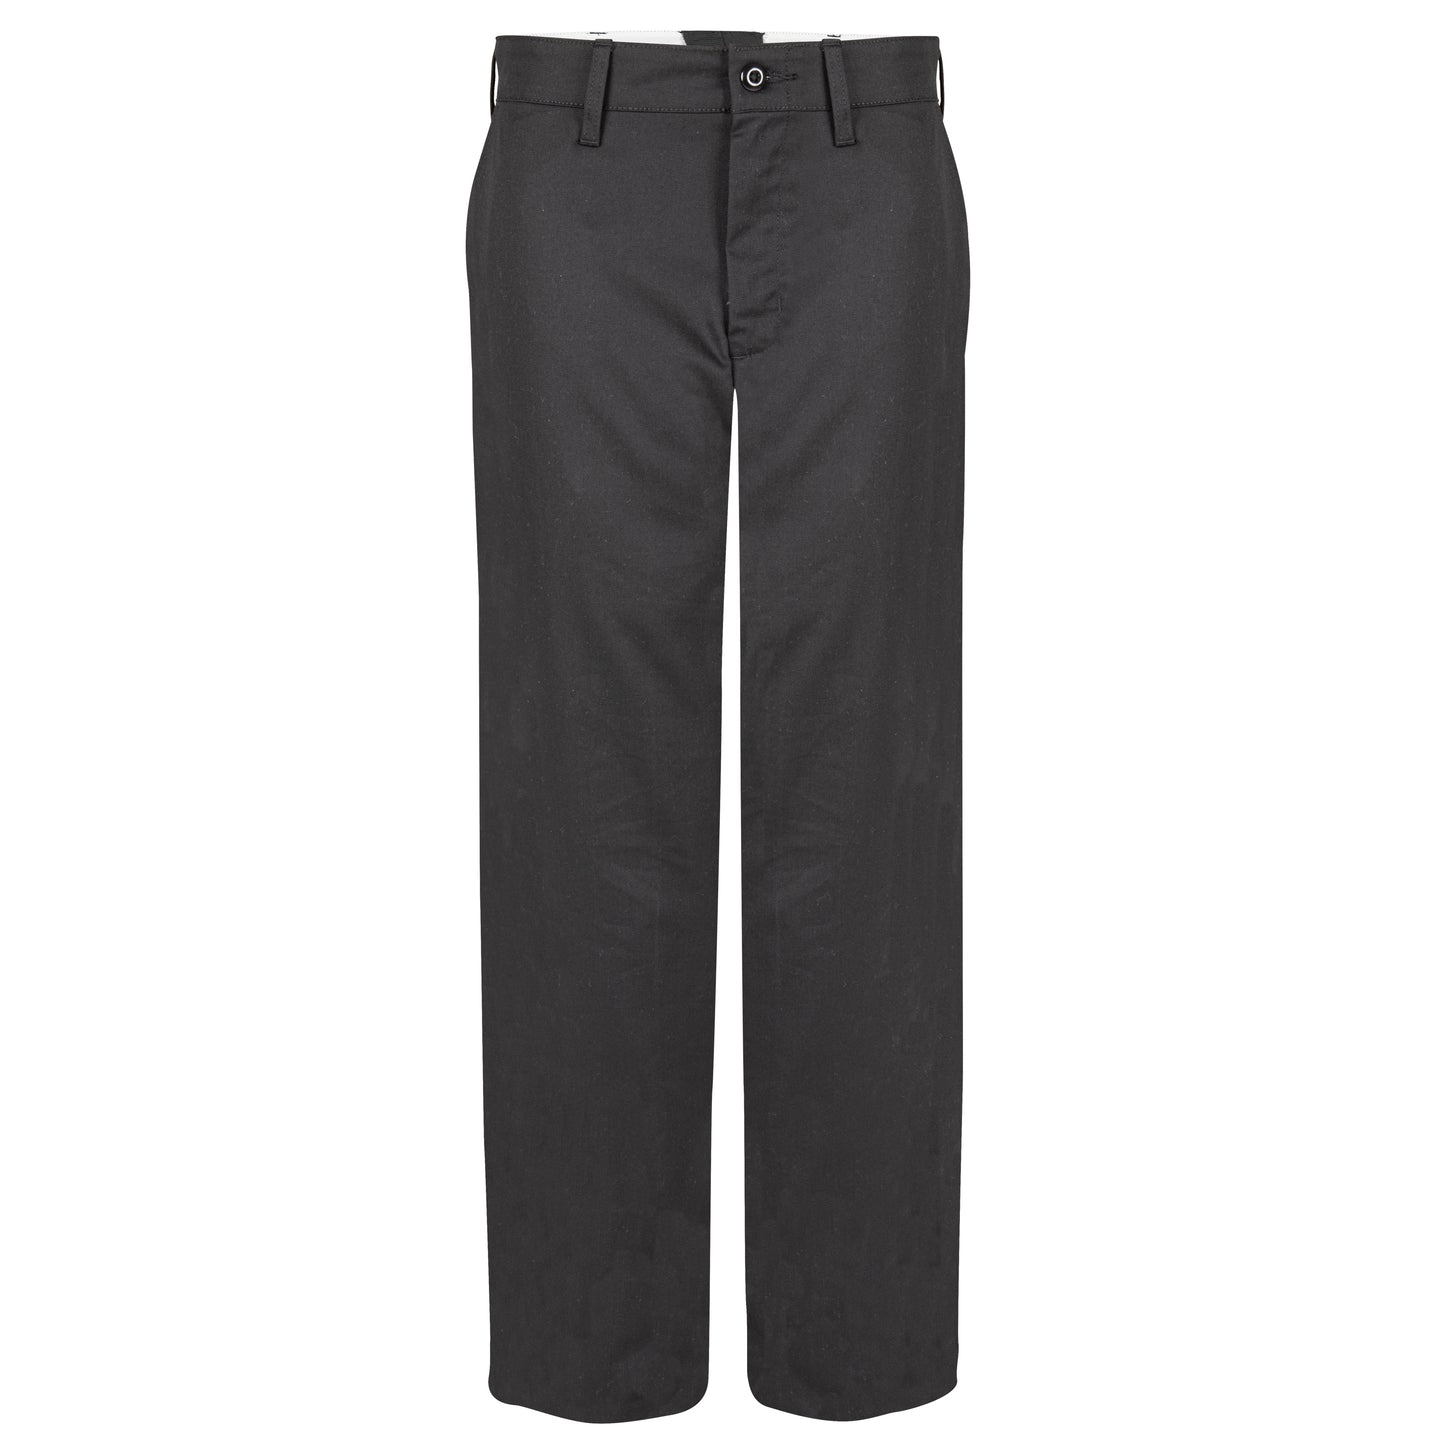 Men's Work Pants, 4 Pockets (2 Side, 2 Back), Unhemmed, Black